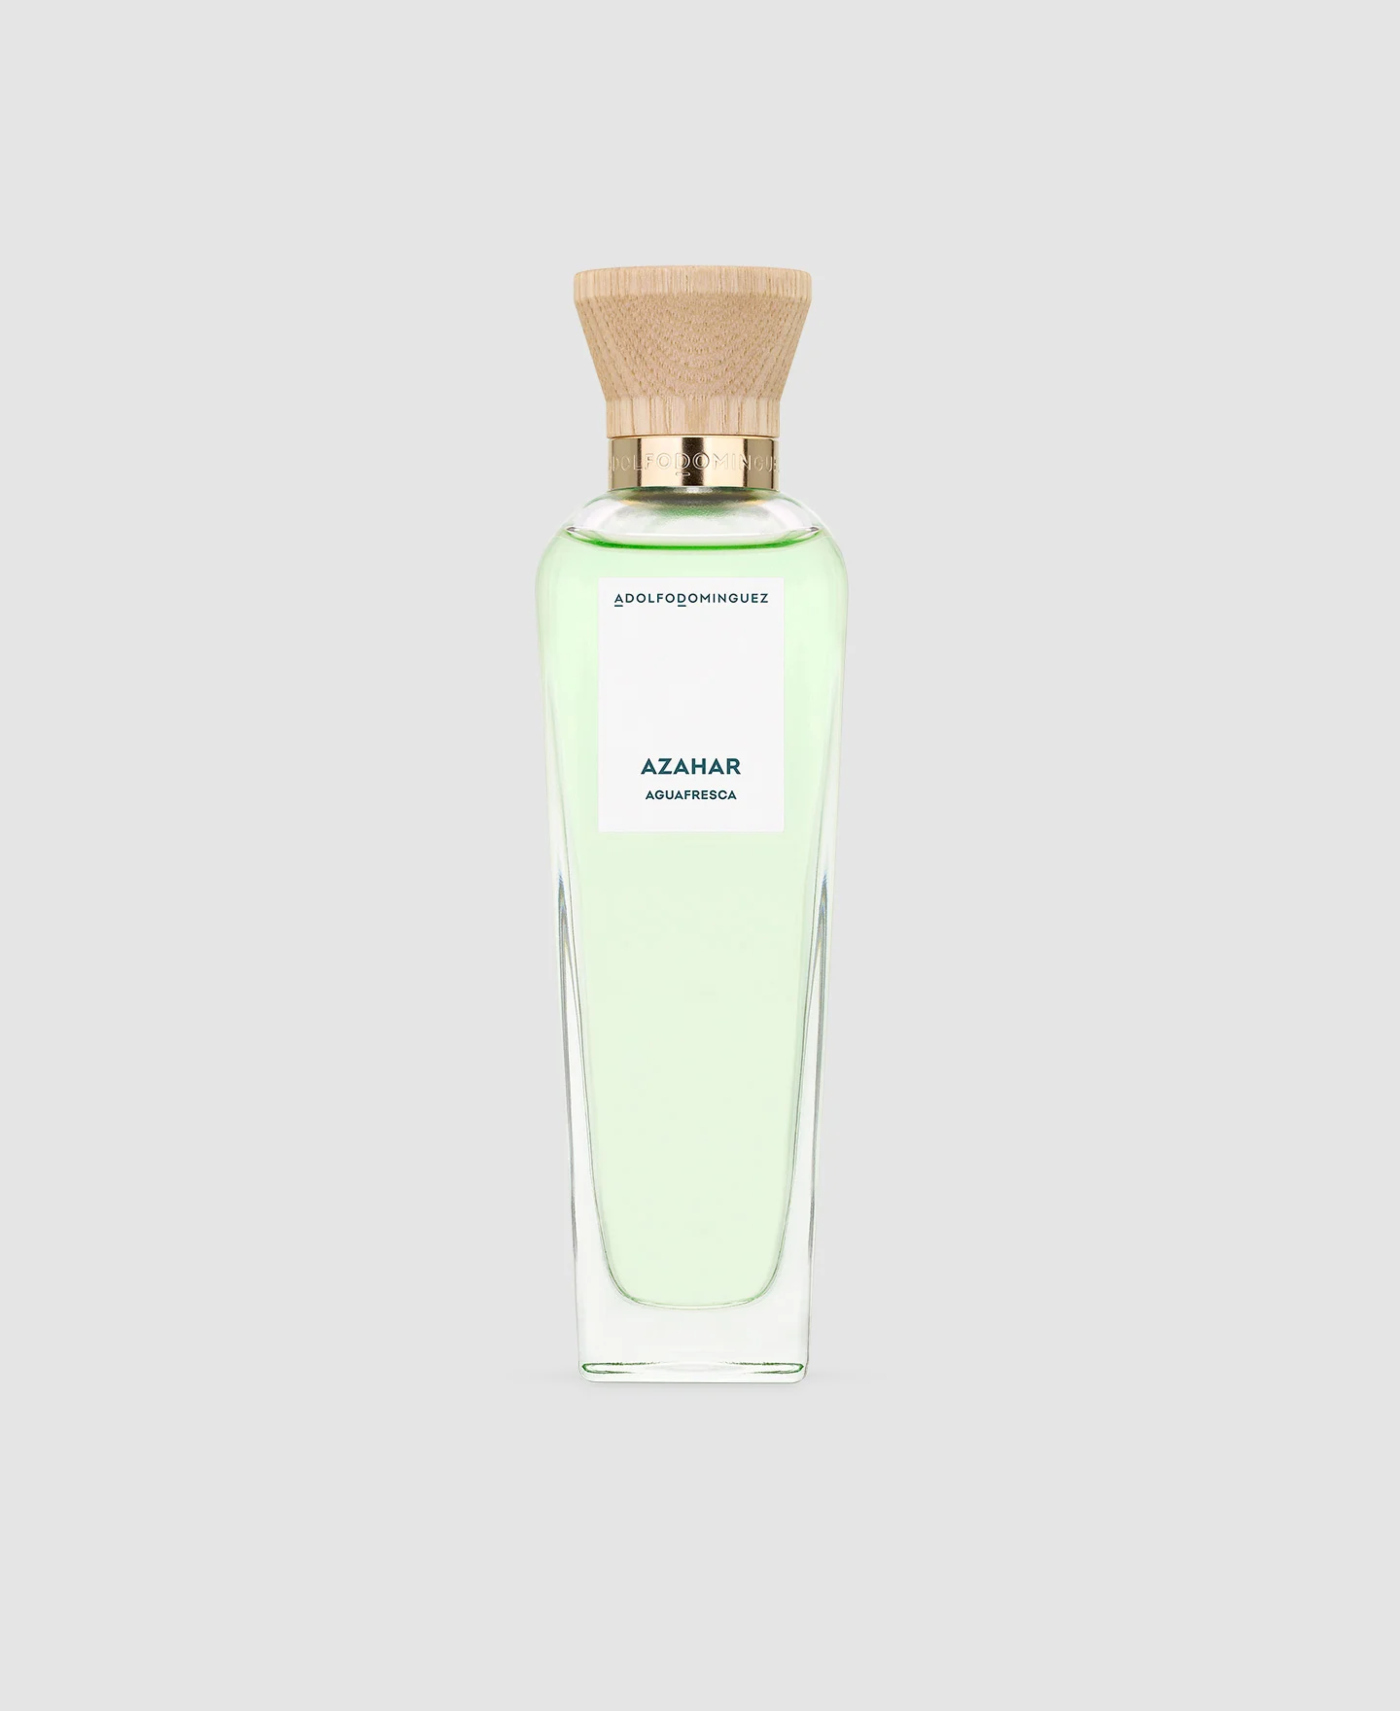 Hemos seleccionado nuestros perfumes favoritos para este verano con un toque de azahar: Agua Fresca de Azahar de Adolfo Domnguez